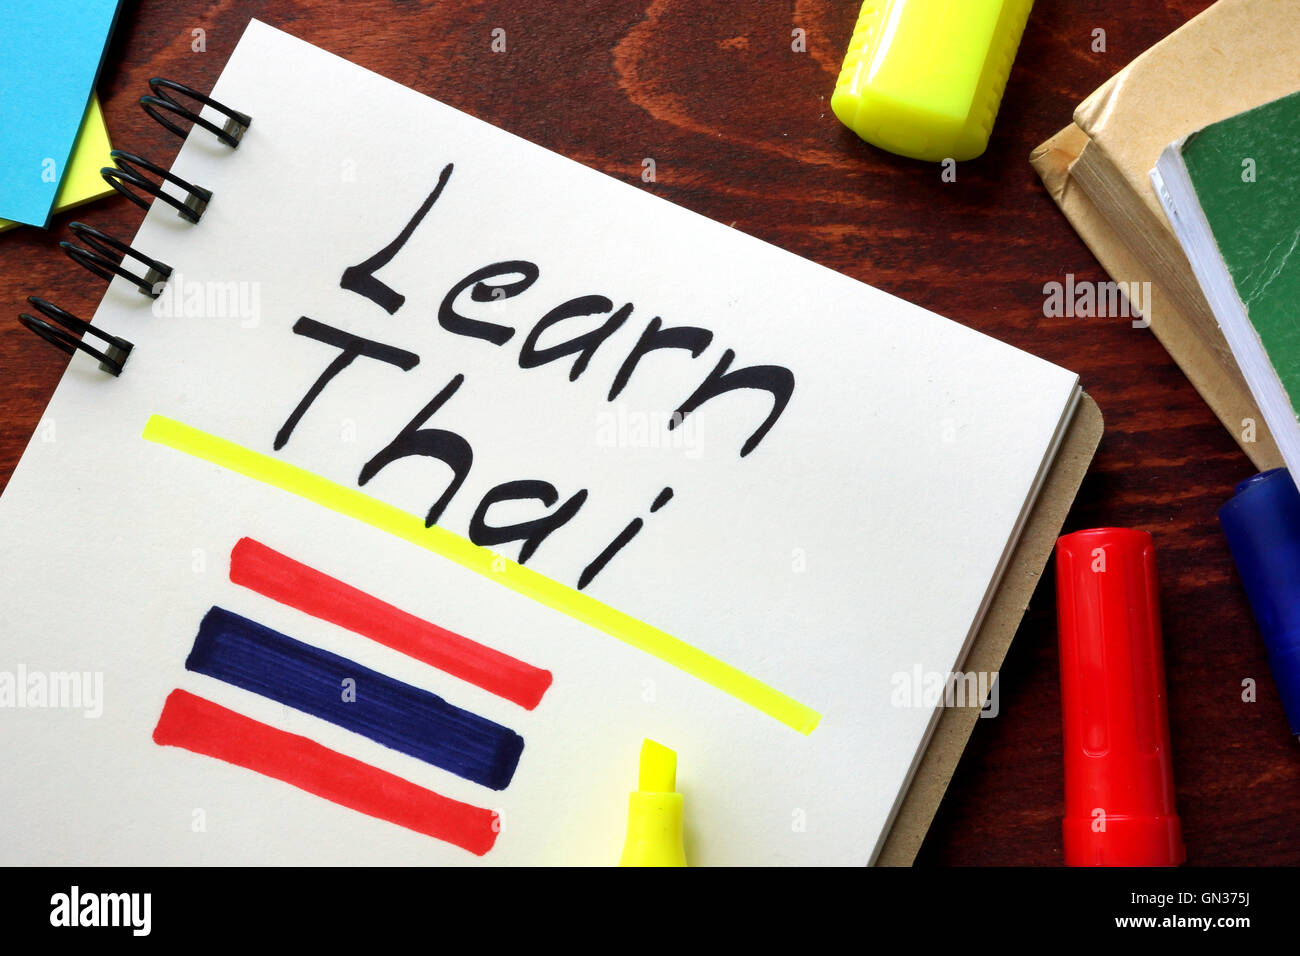 Apprendre le thaï écrit dans un bloc-notes. Concept de l'éducation. Banque D'Images